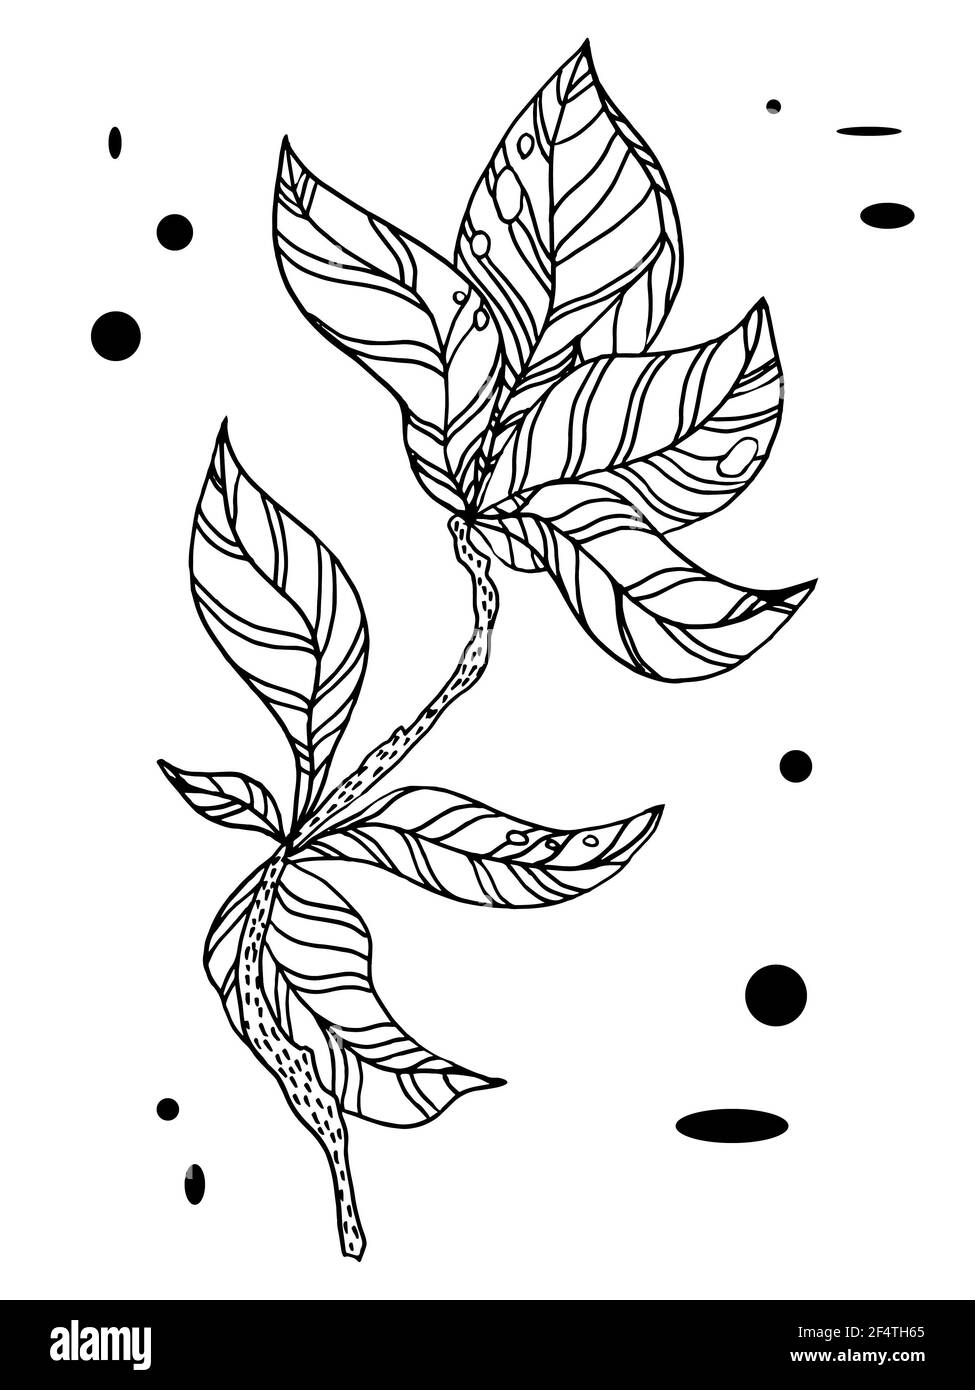 Zweig mit Blättern.Vektor-Handzeichnung Zweige mit Blättern und Streifen Stockfoto